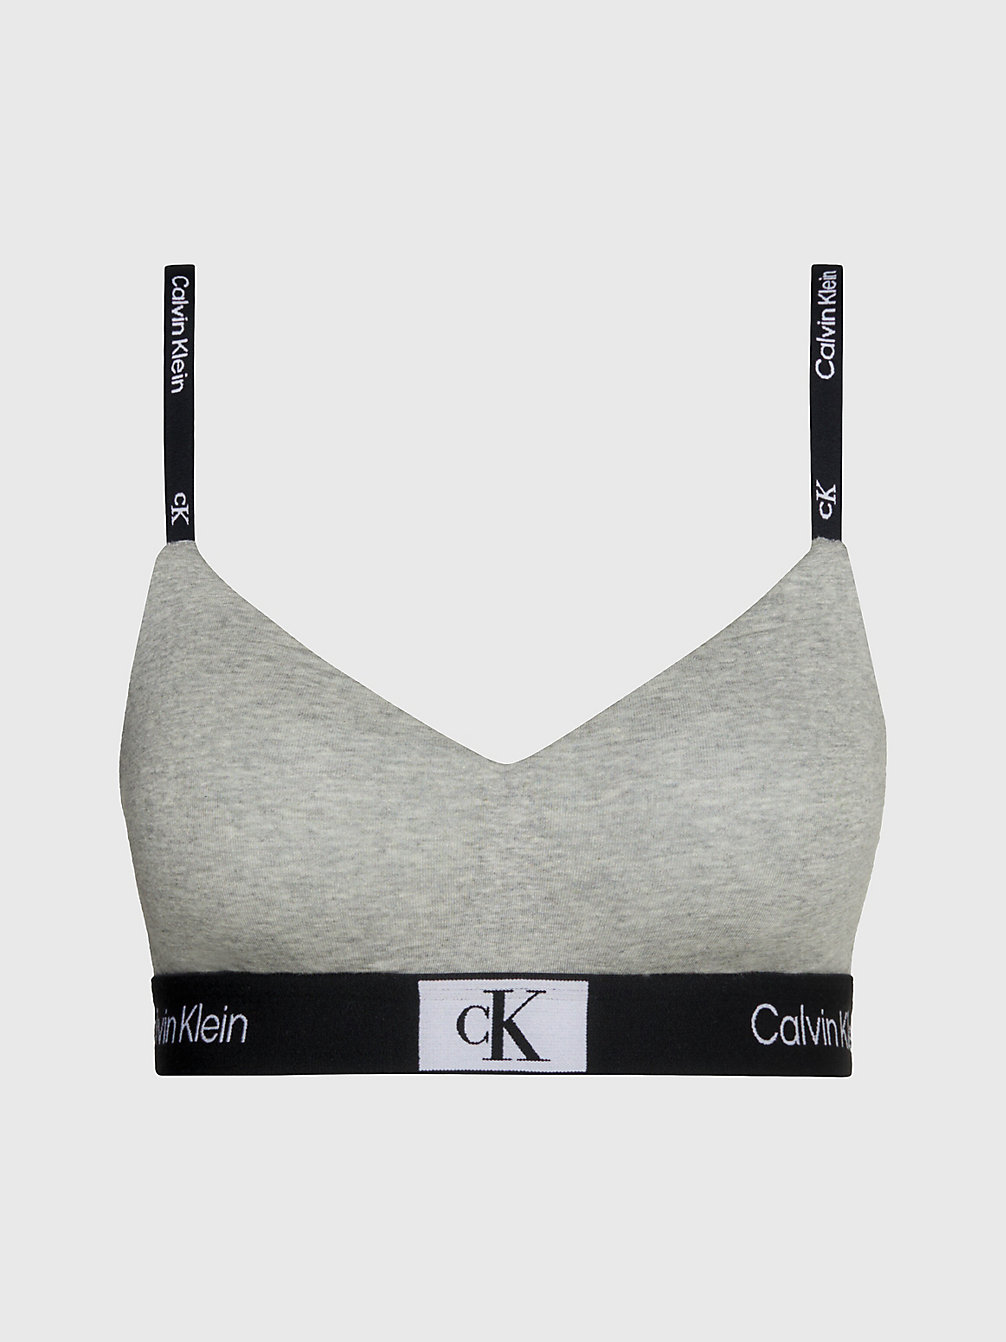 GREY HEATHER Bralette - Ck96 undefined Damen Calvin Klein